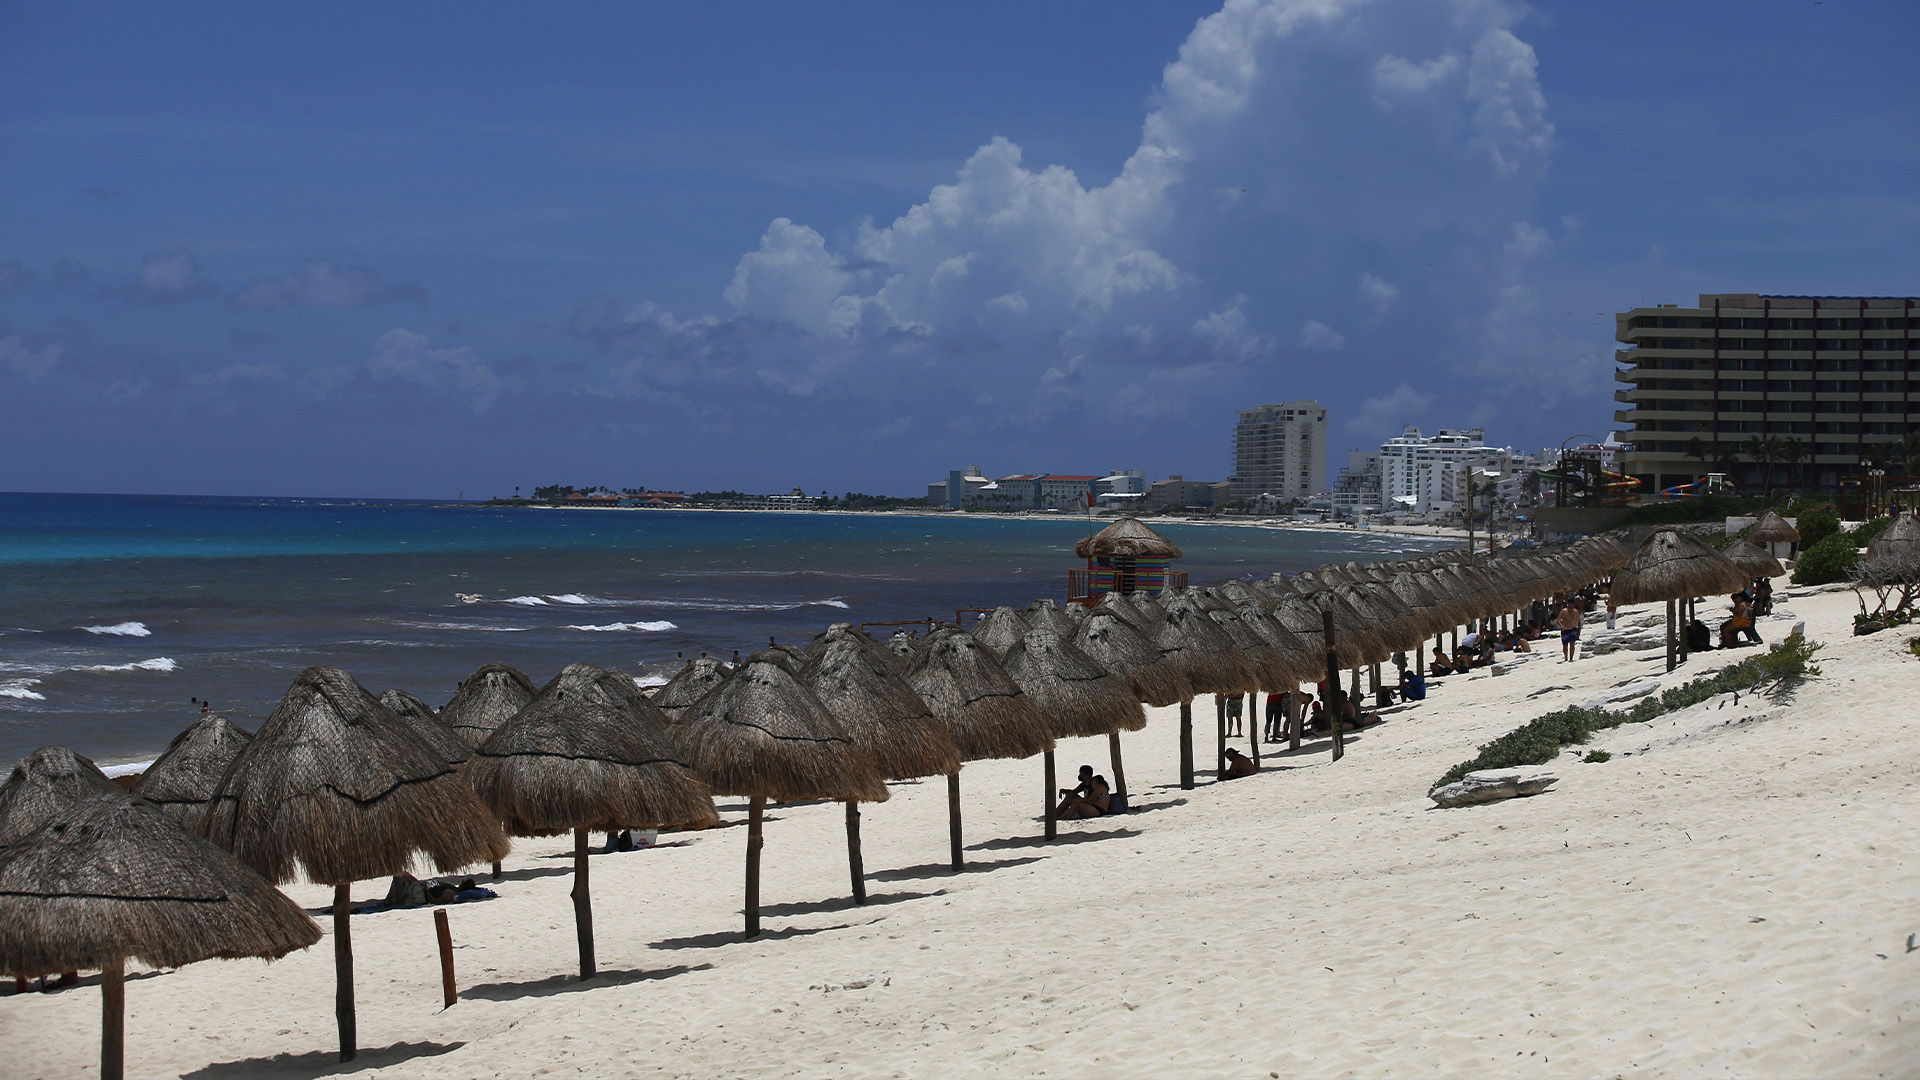 Les touristes profitent de la plage à Cancun, dans l'État de Quintana Roo, au Mexique, le mercredi 18 août 2021.